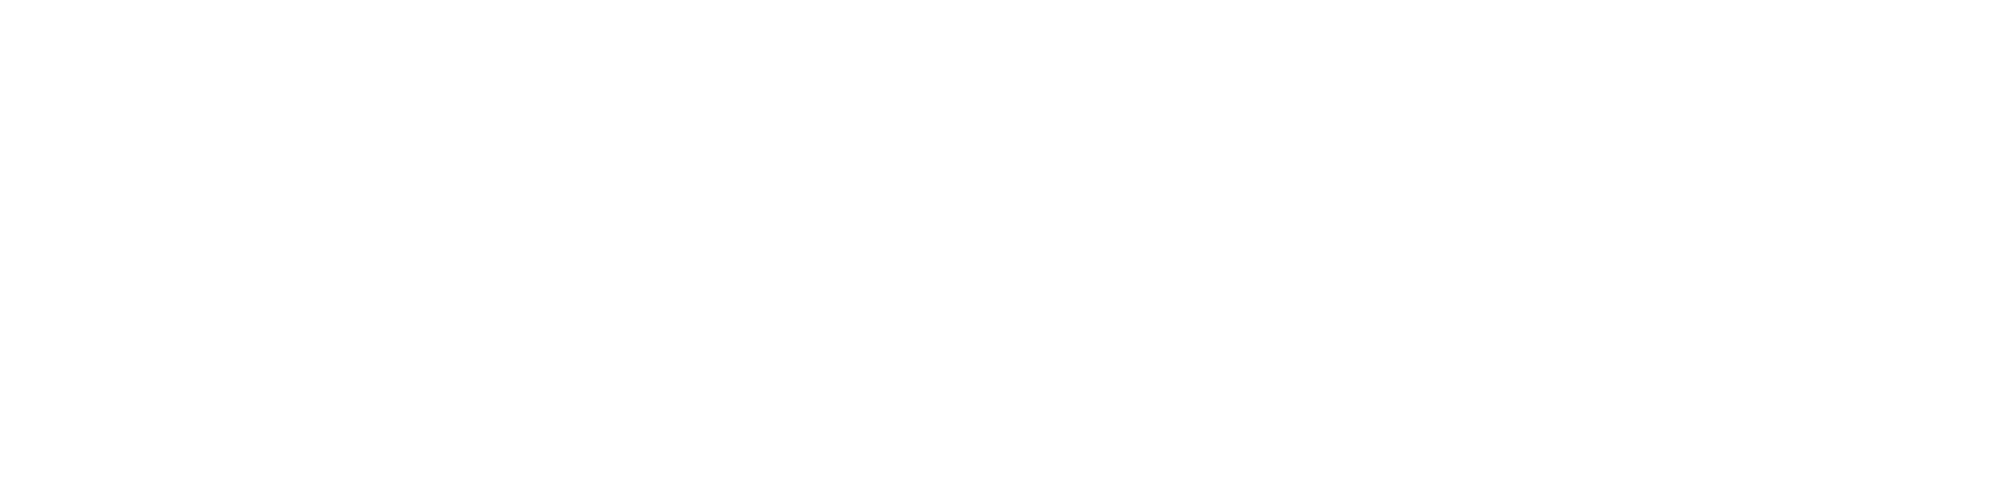 Gardeners: List of the Best 